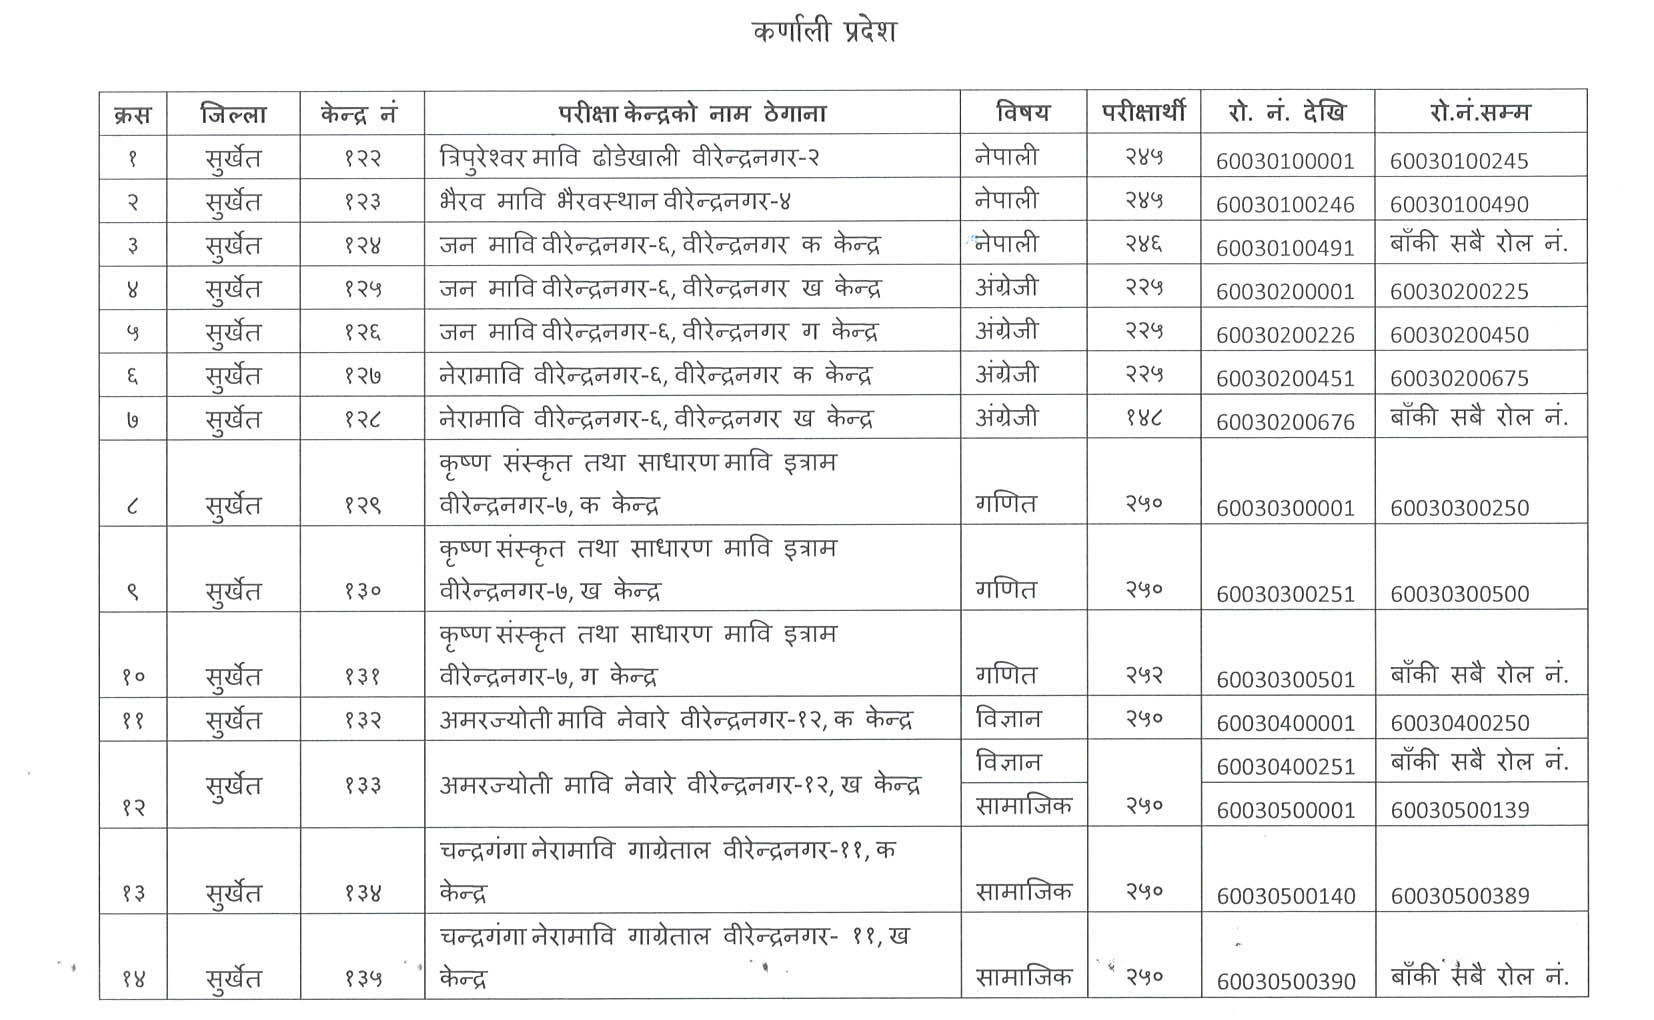 Shikshak Sewa Aayog Secondary Level Karnali Pradesh Teacher Exam Center 2079